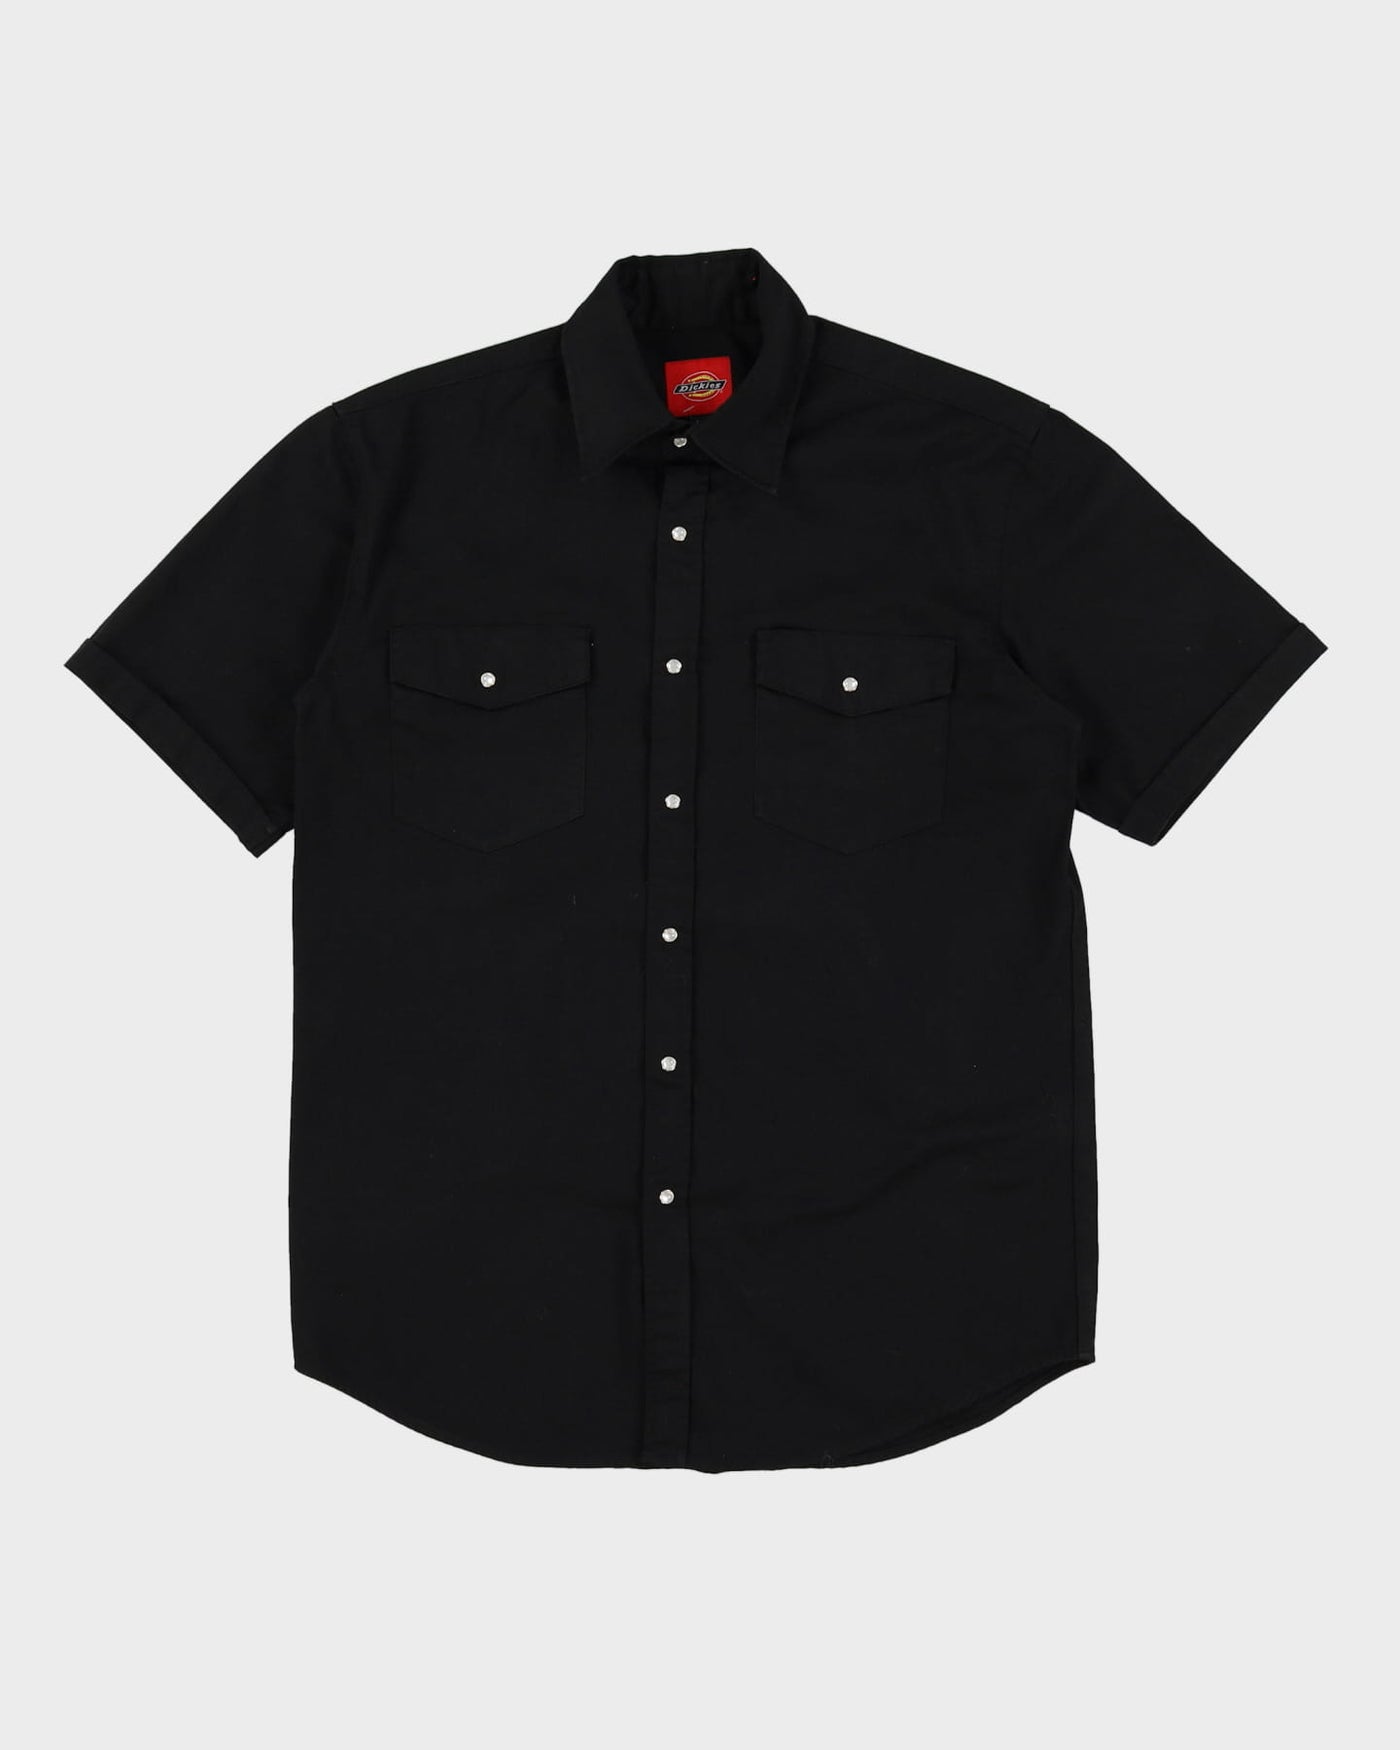 Dickies Black Short-Sleeve Western Work Shirt - M